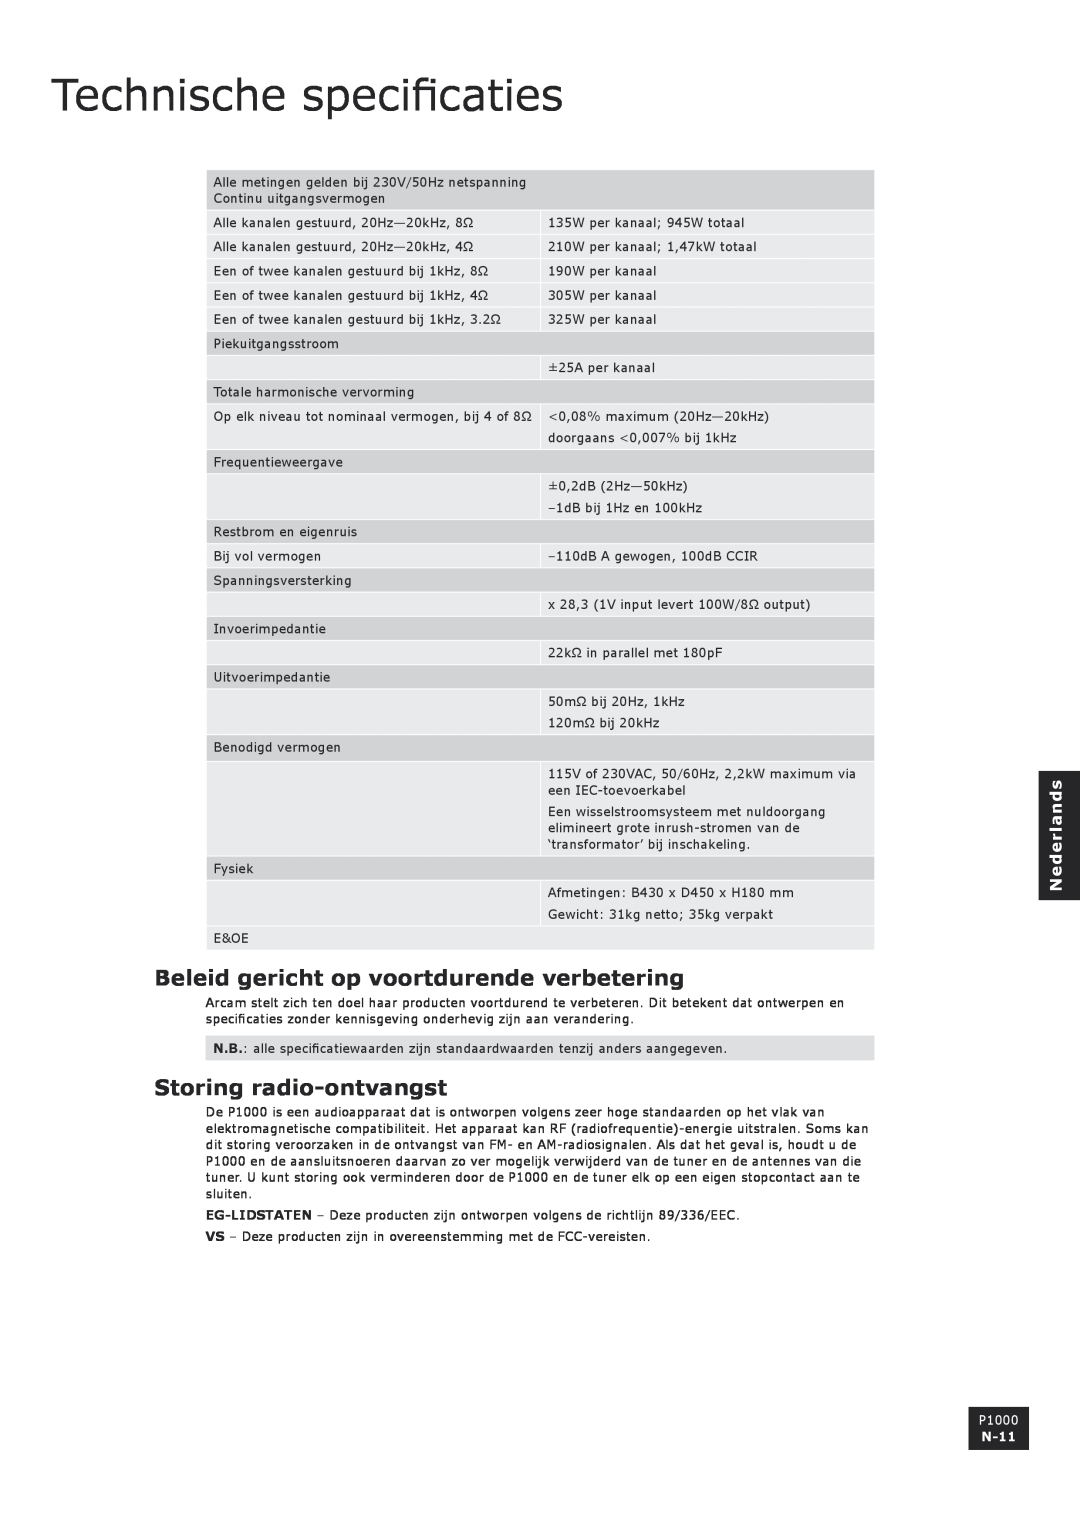 Arcam P1000 manual Technische specificaties, Beleid gericht op voortdurende verbetering, Storing radio-ontvangst, N-11 